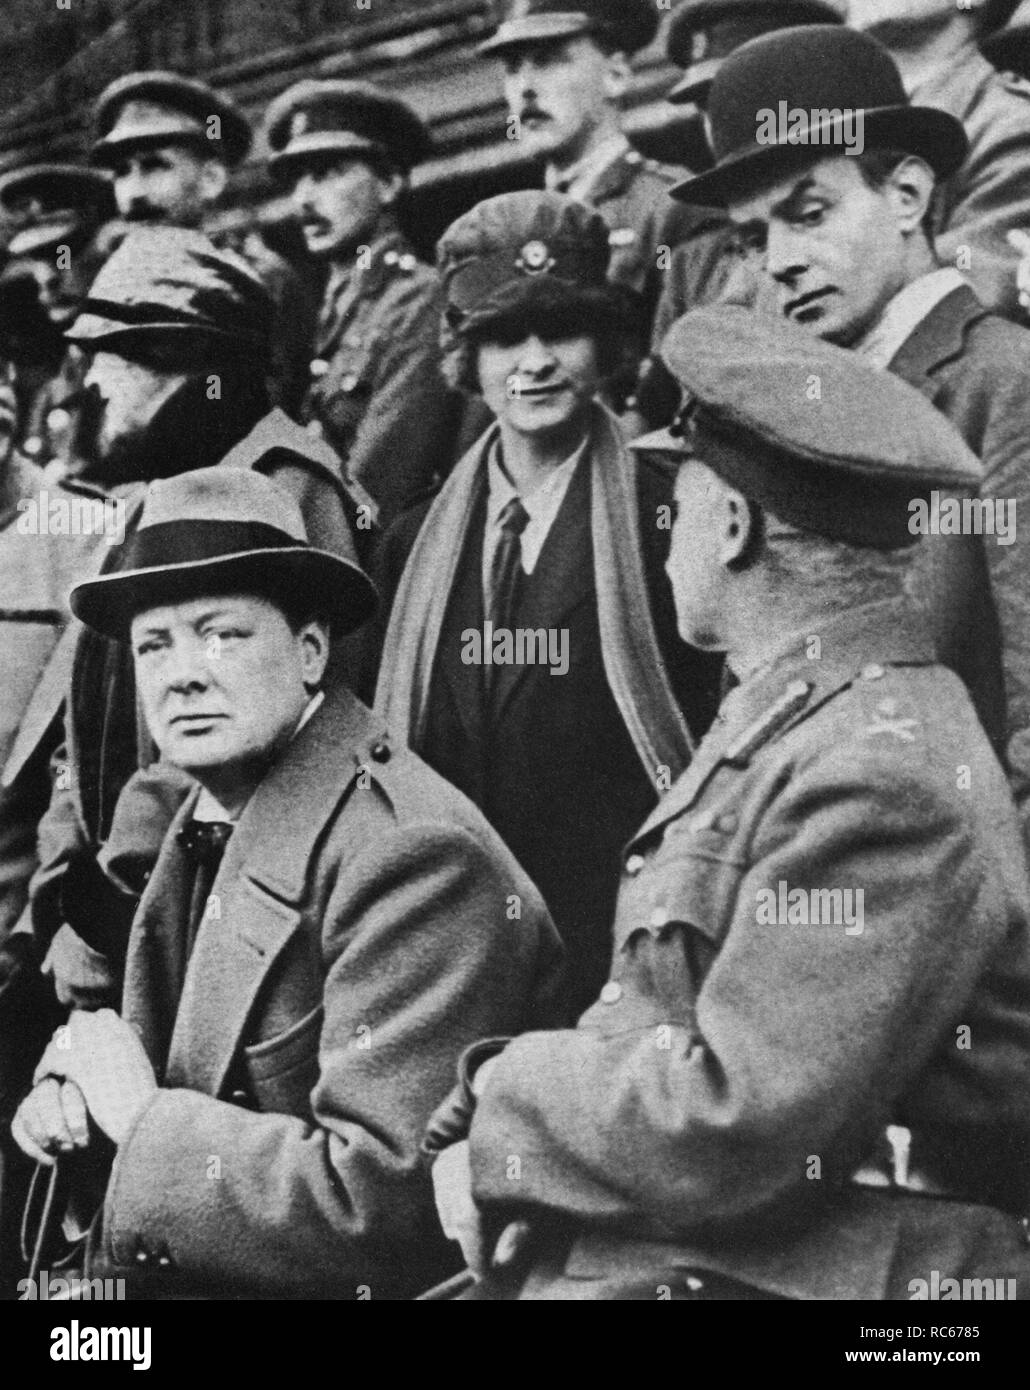 Winston Churchill beobachtet den vormarsch britischer Truppen, Eddie Marsh hinter Churchill in Melone Hut. Lille, 29. Oktober 1918 Stockfoto